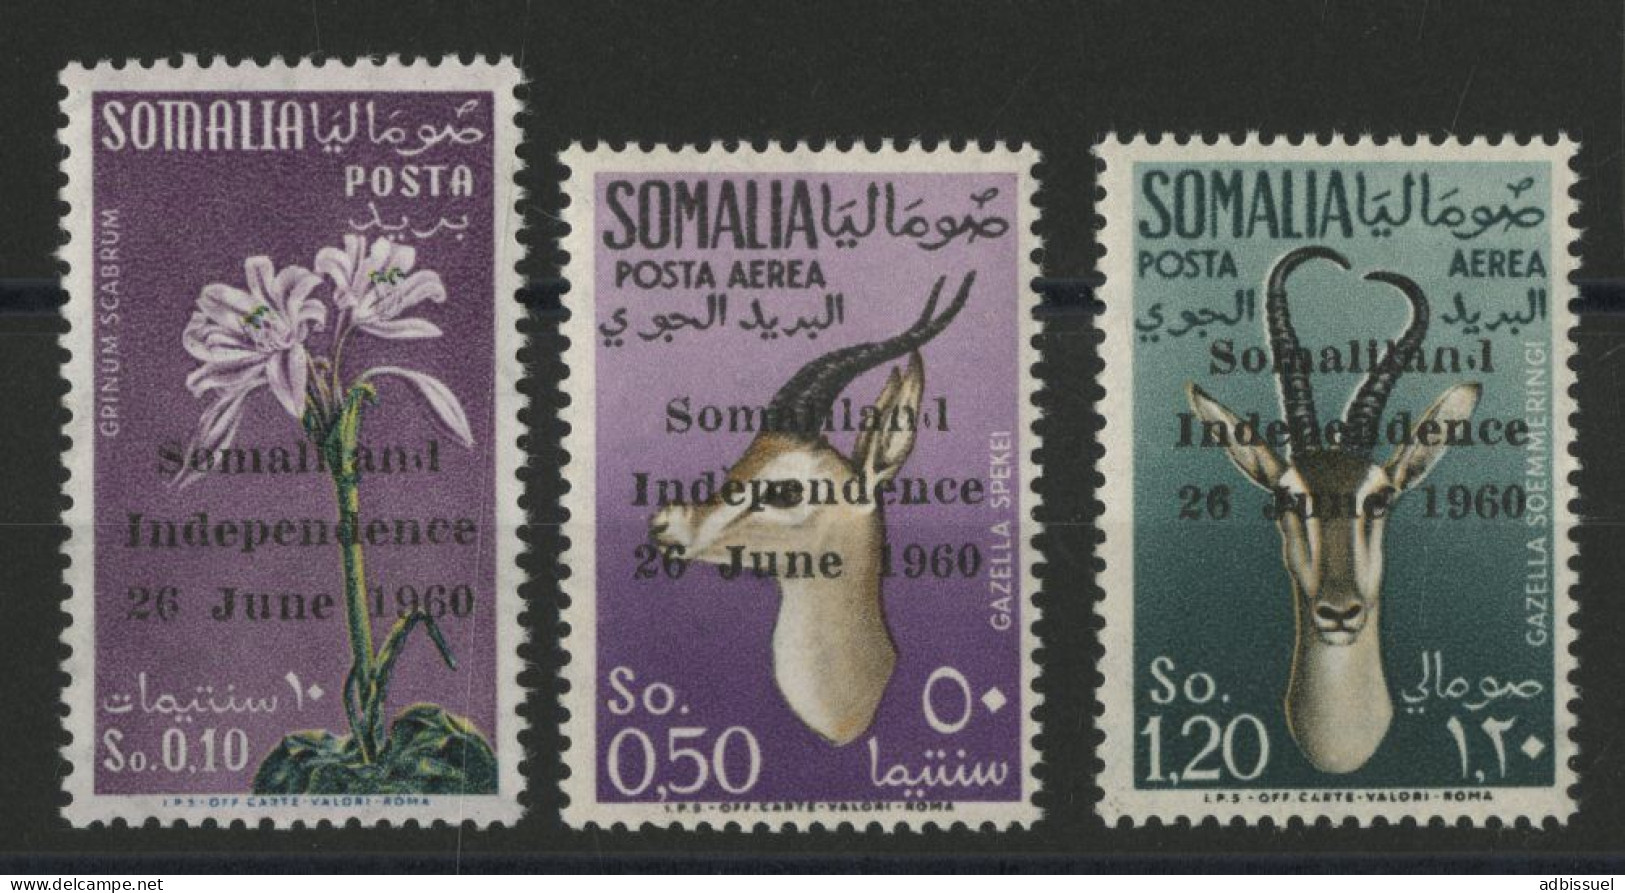 SOMALIA N° 1 + Poste Aérienne N° 1 + 2 Cote 105 € Neufs Sans Charnière ** (MNH) Voir Description - Somalia (1960-...)